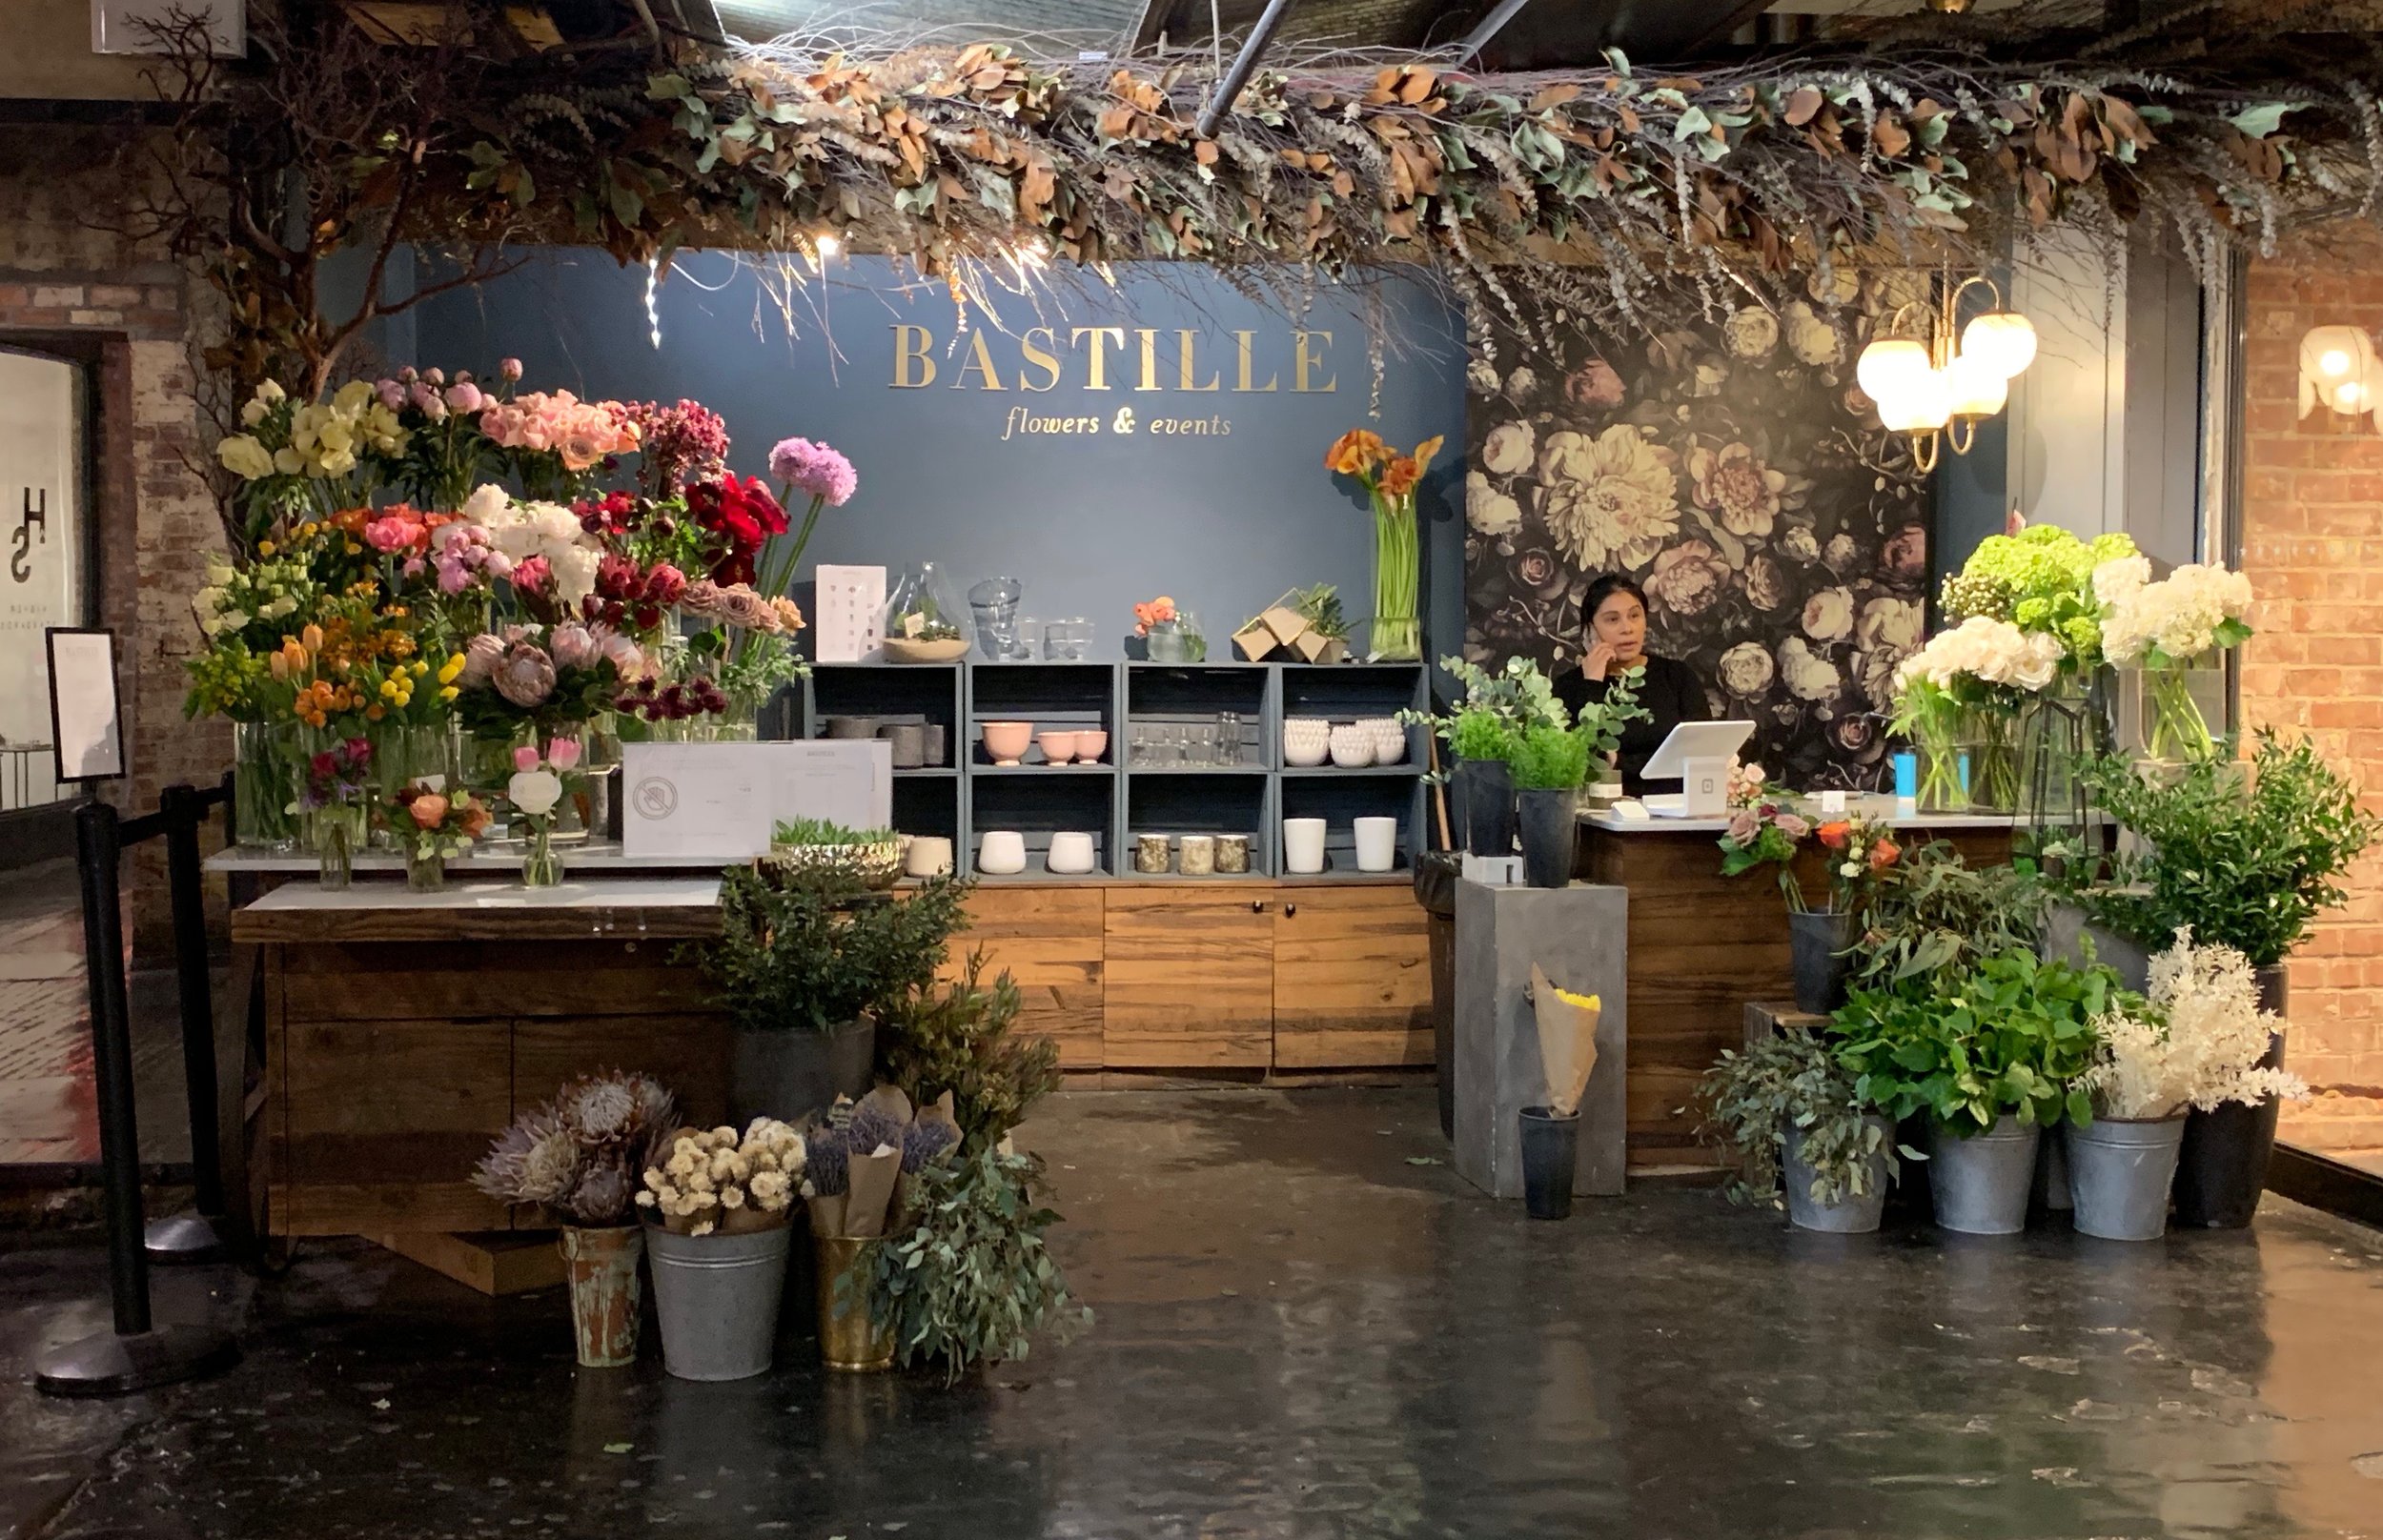 Chelsea Market - NYC Manhattan - Flowers, Bastille